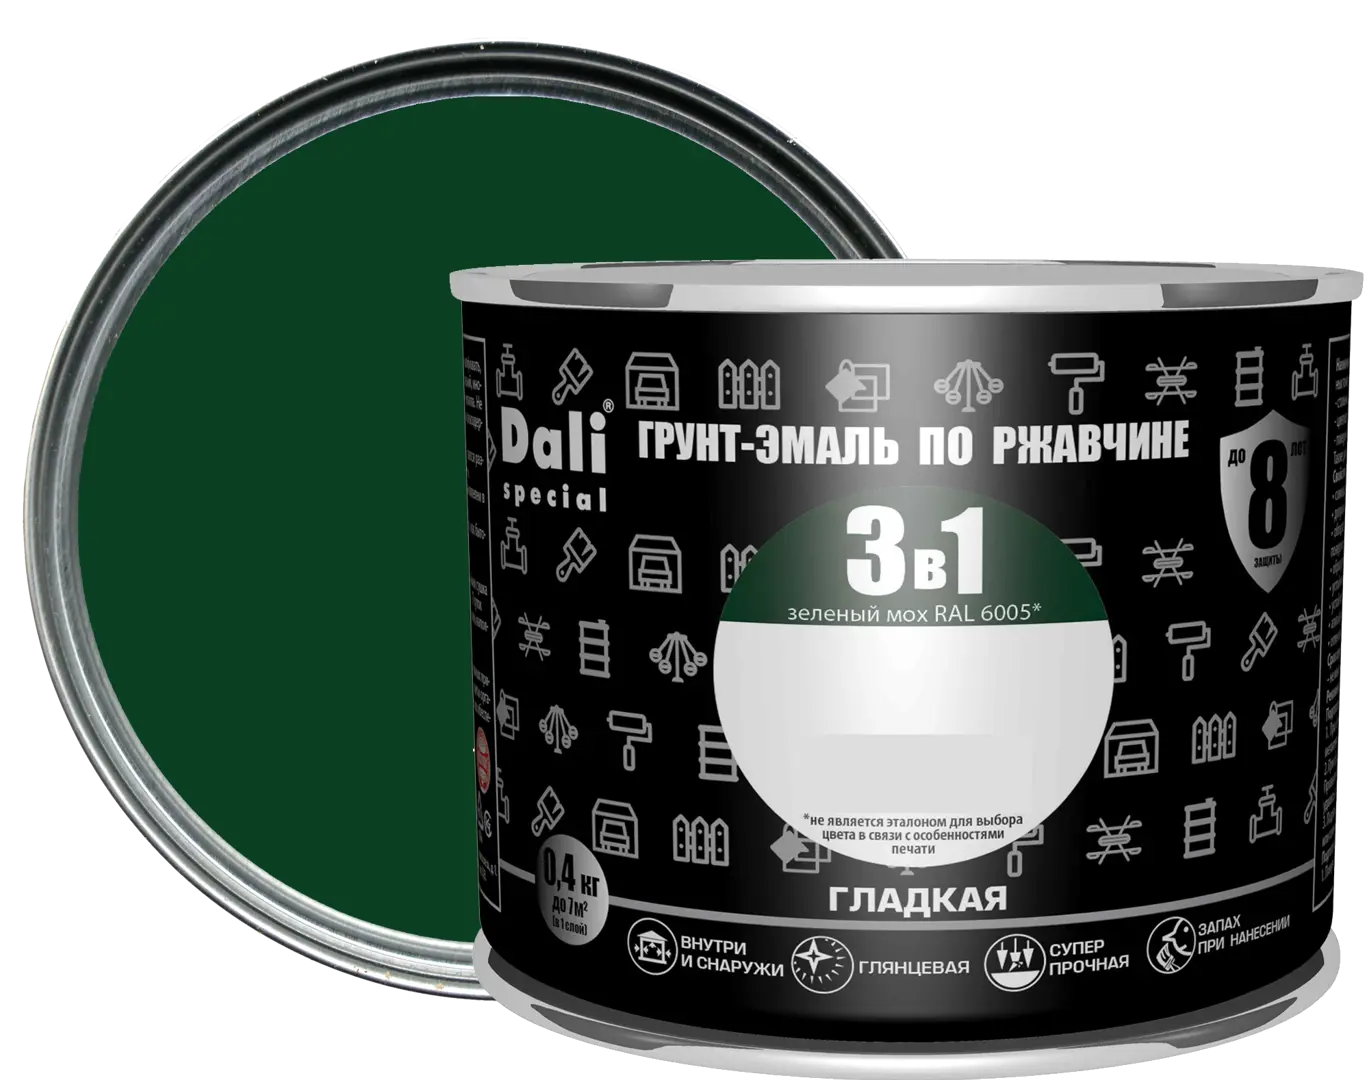 Грунт-эмаль по ржавчине 3 в 1 Dali Special гладкая цвет зелёный мох 0.4 кг RAL 6005 грунт эмаль по ржавчине 3 в 1 empils гладкая цвет зелёный 10 кг